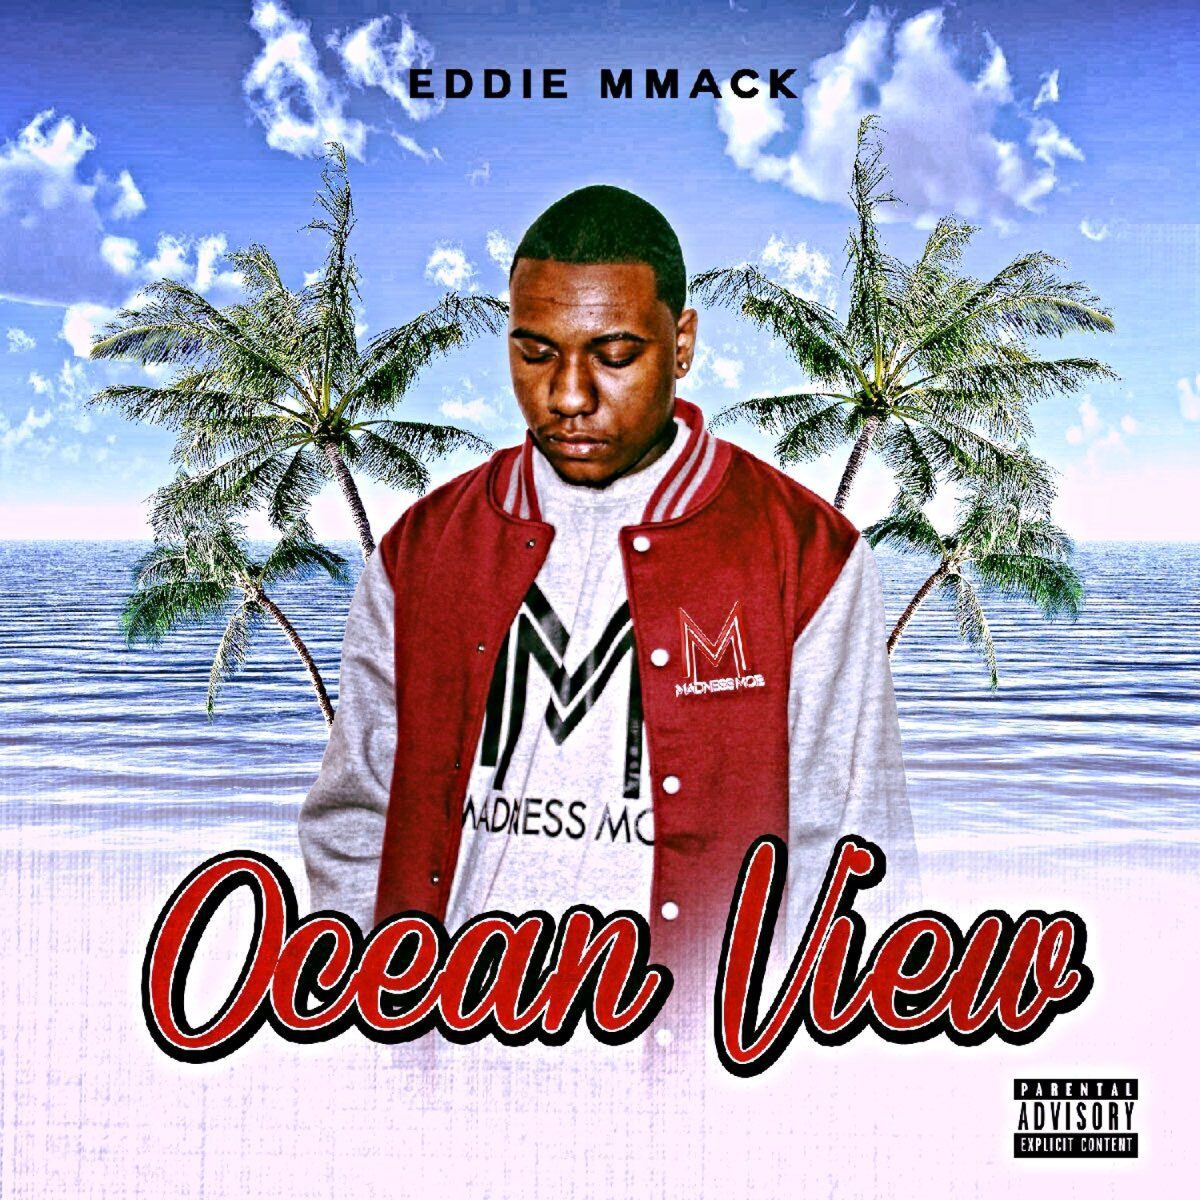 Eddie MMack - Ocean View